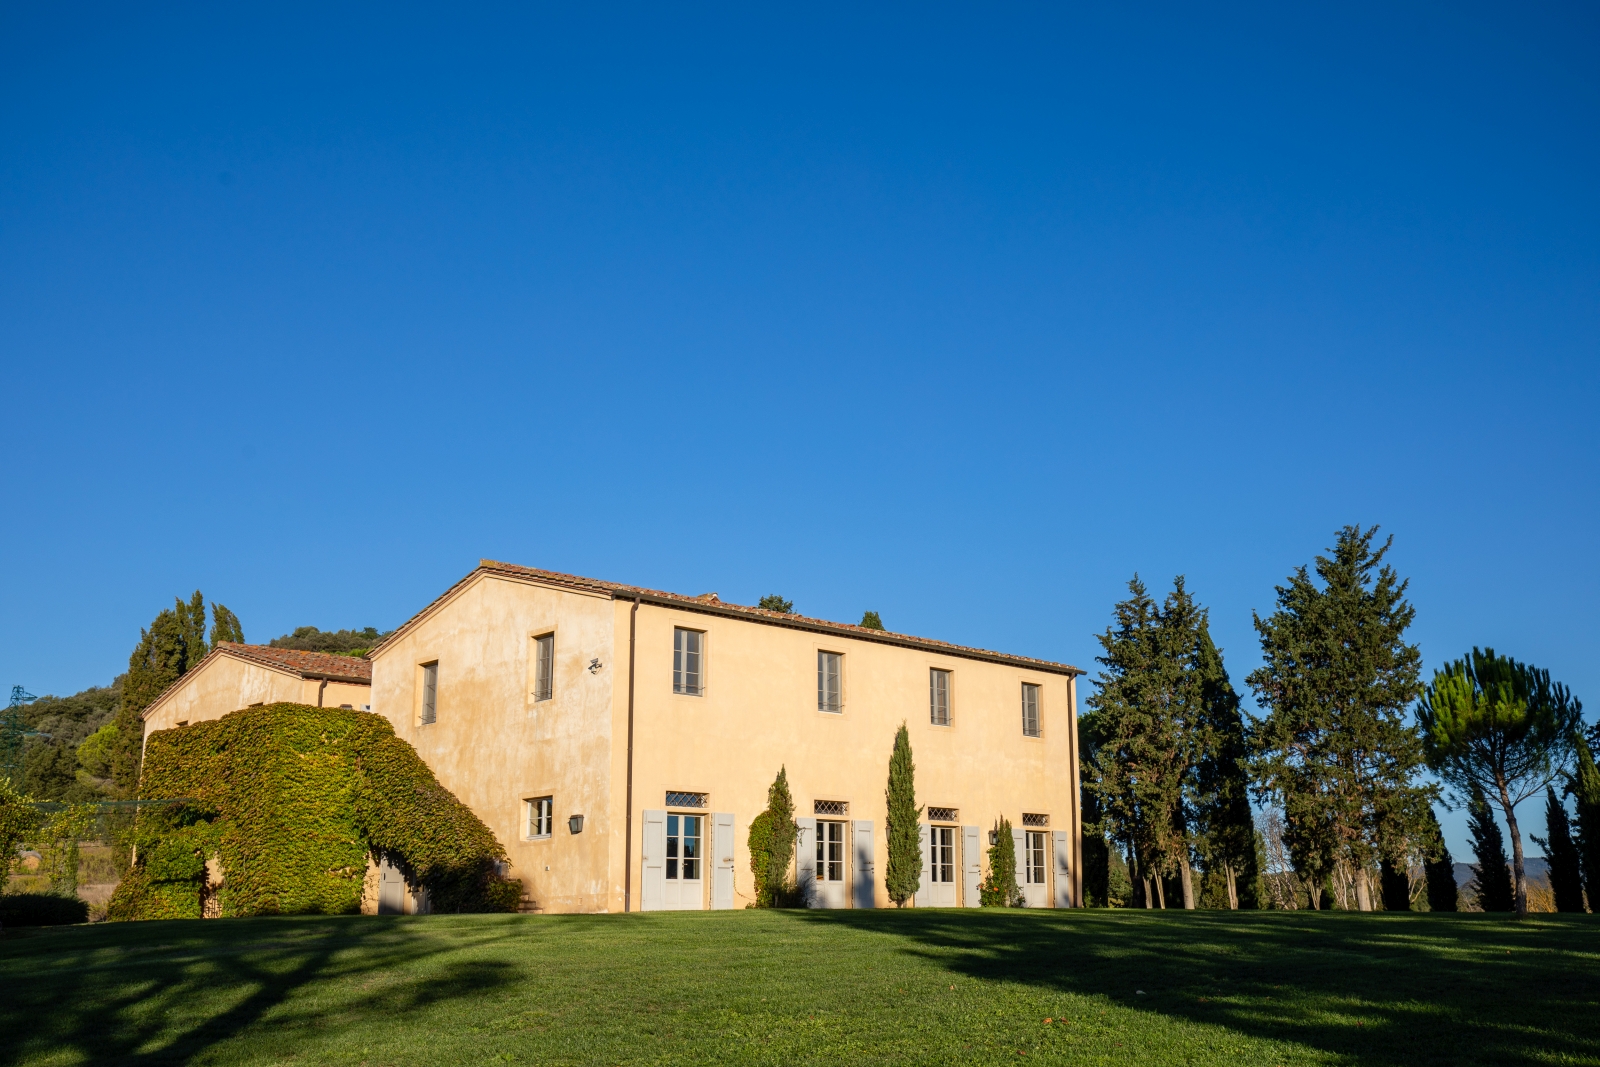 Exterior views  at Il Serratone villa in Tuscany Italy